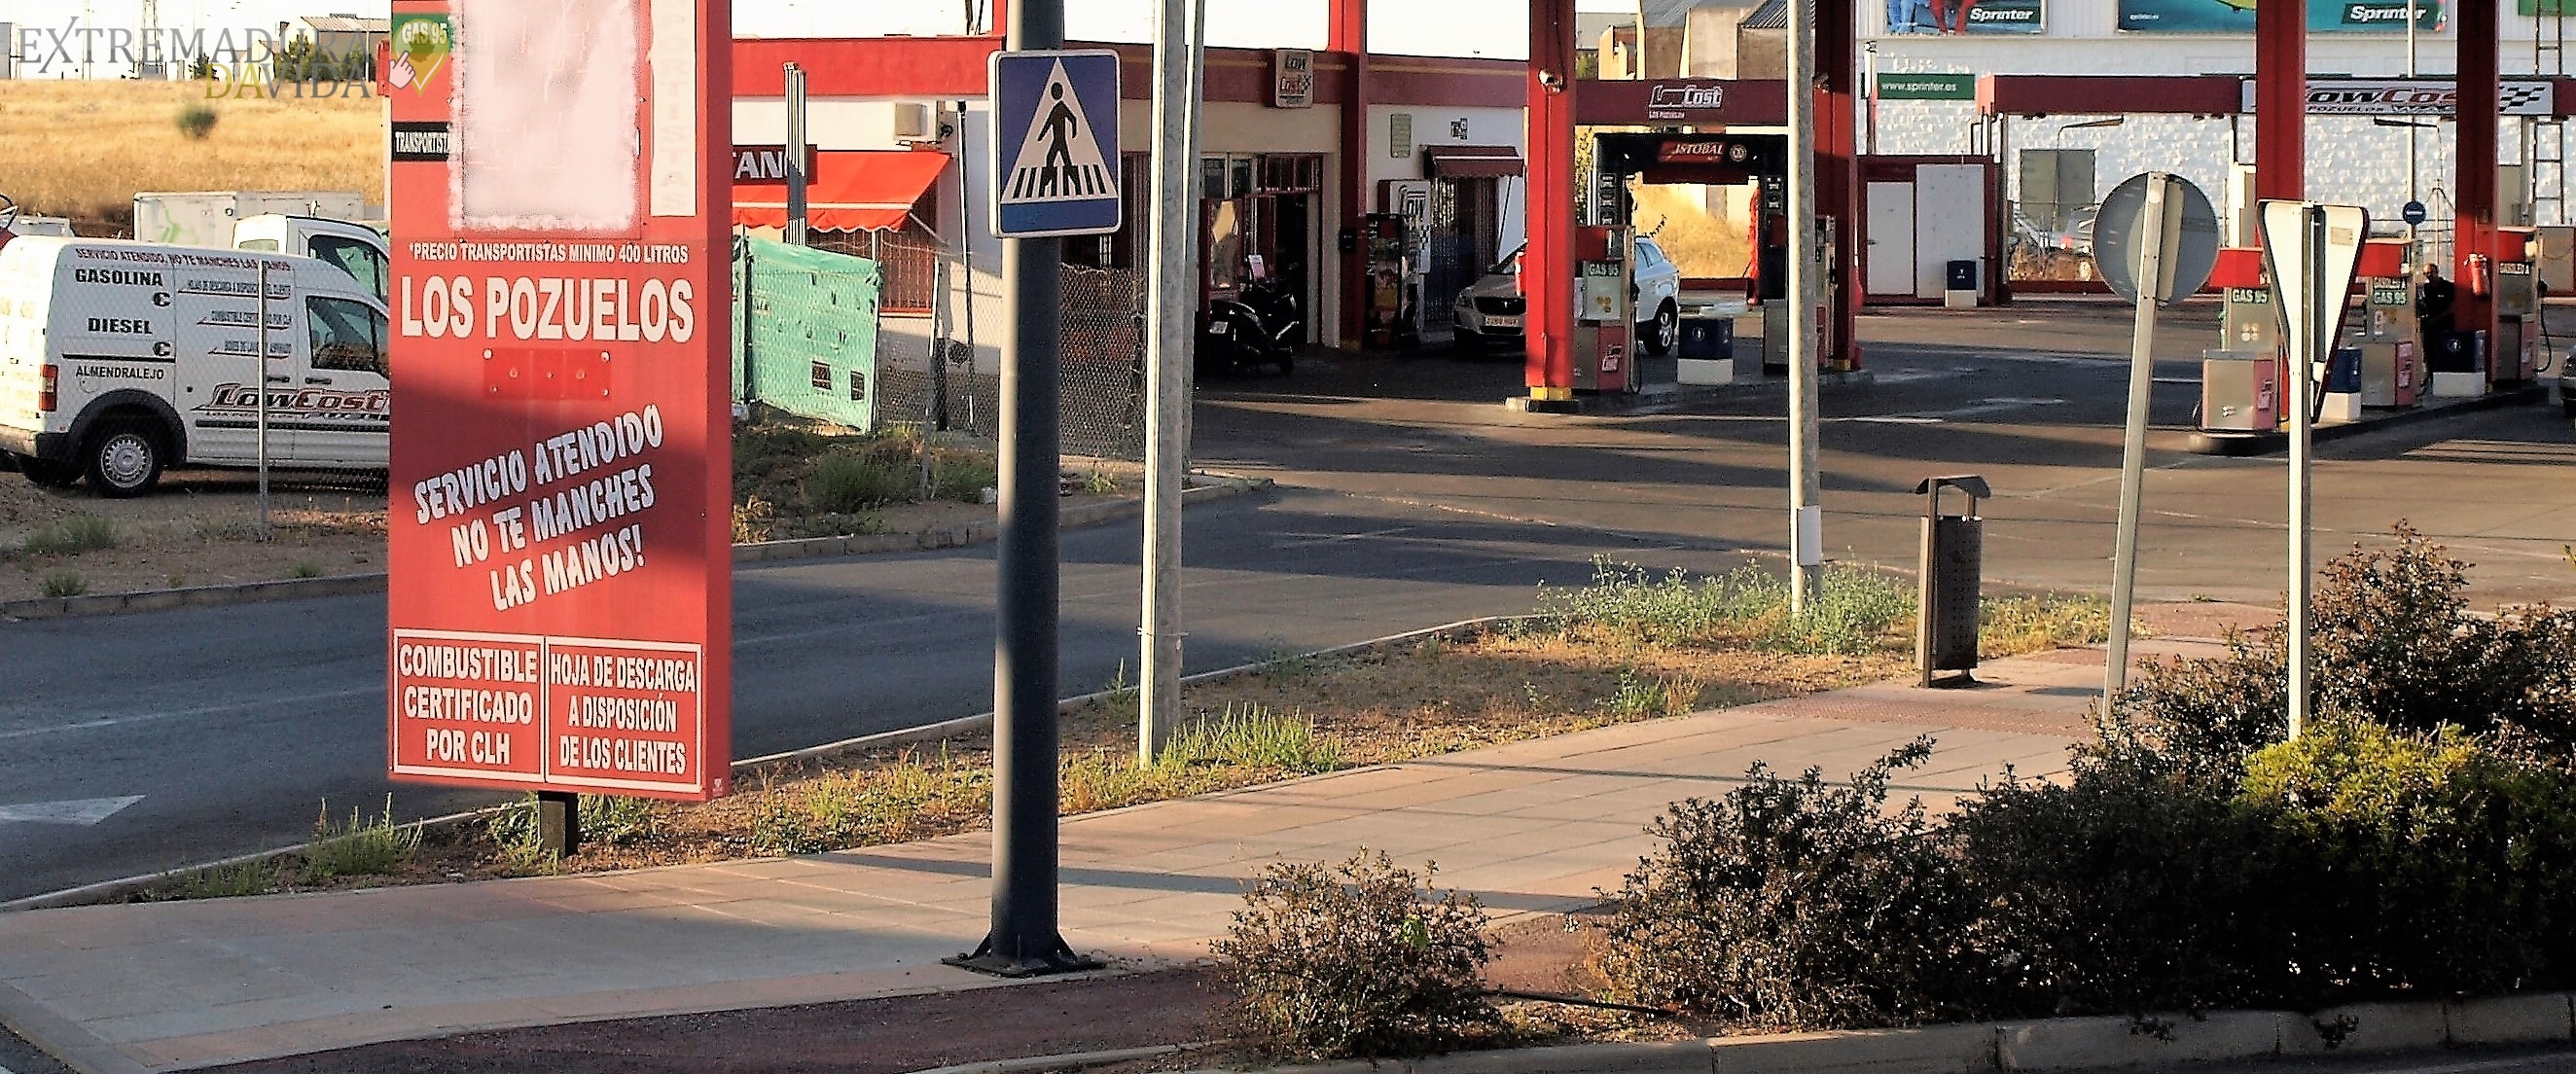 La estación de servicio gasolinera mas barata de Almendralejo Low Cost Fuel